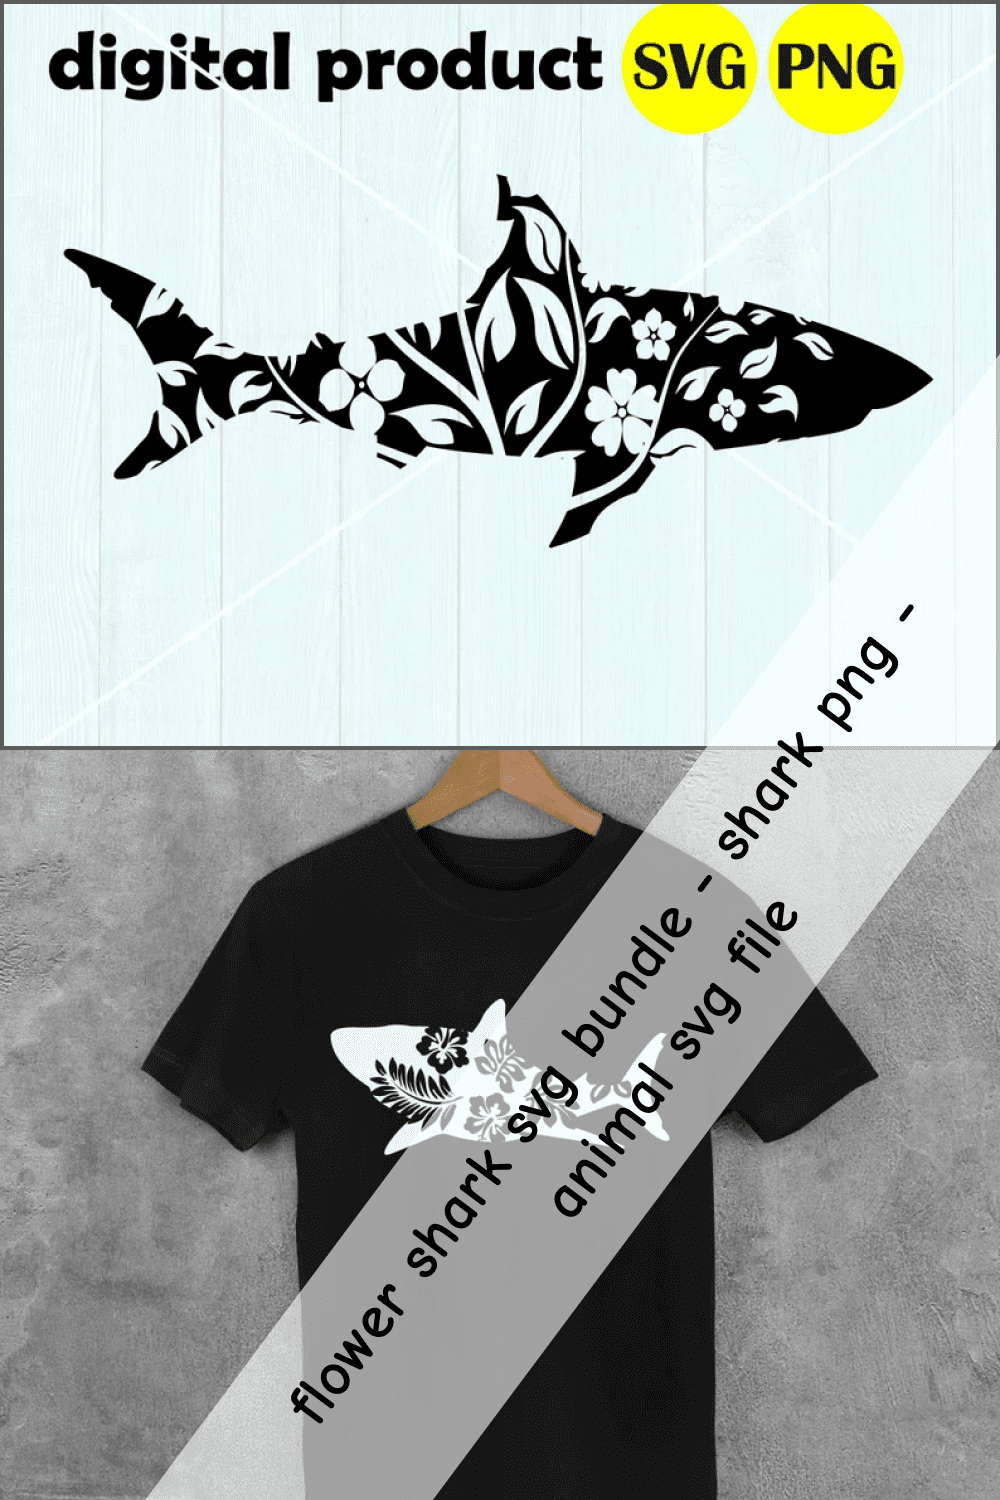 Floral Shark SVG Bundle.